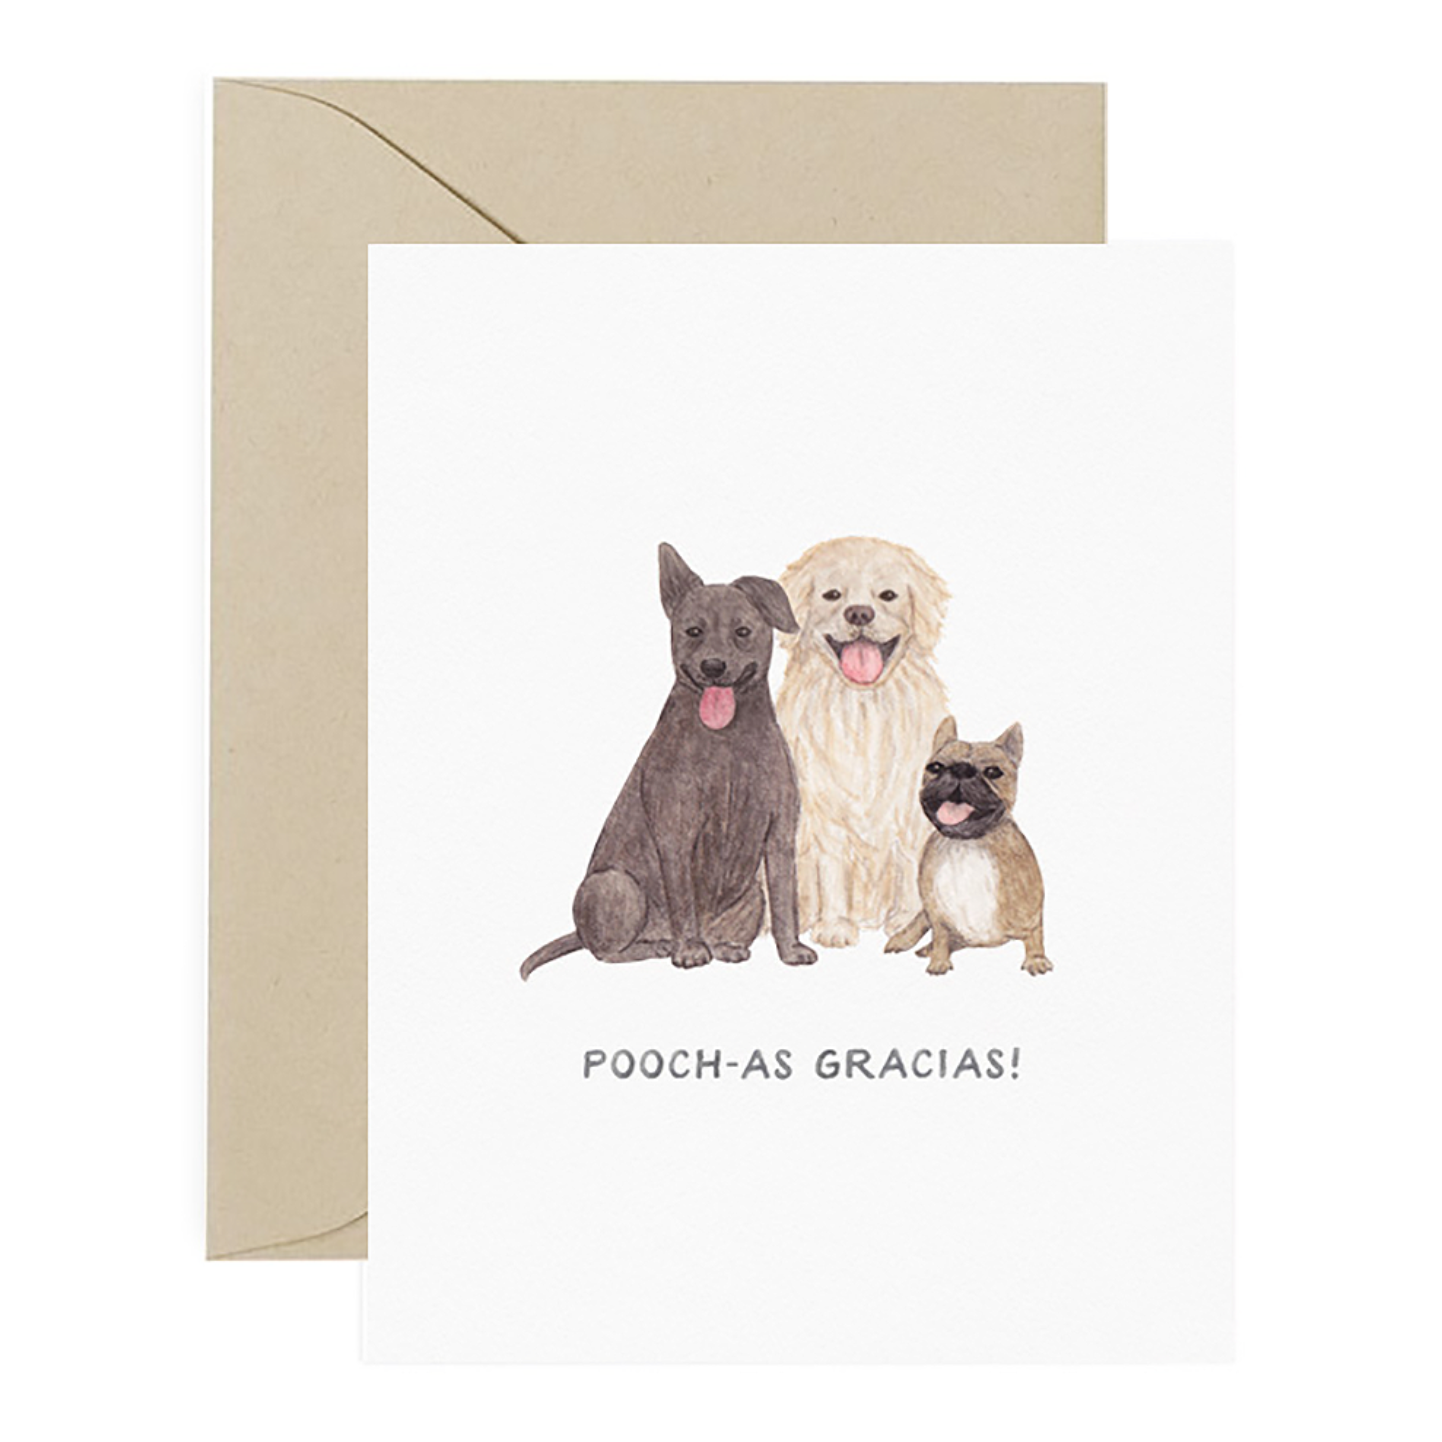 Pooch-as Gracias Thank You Card